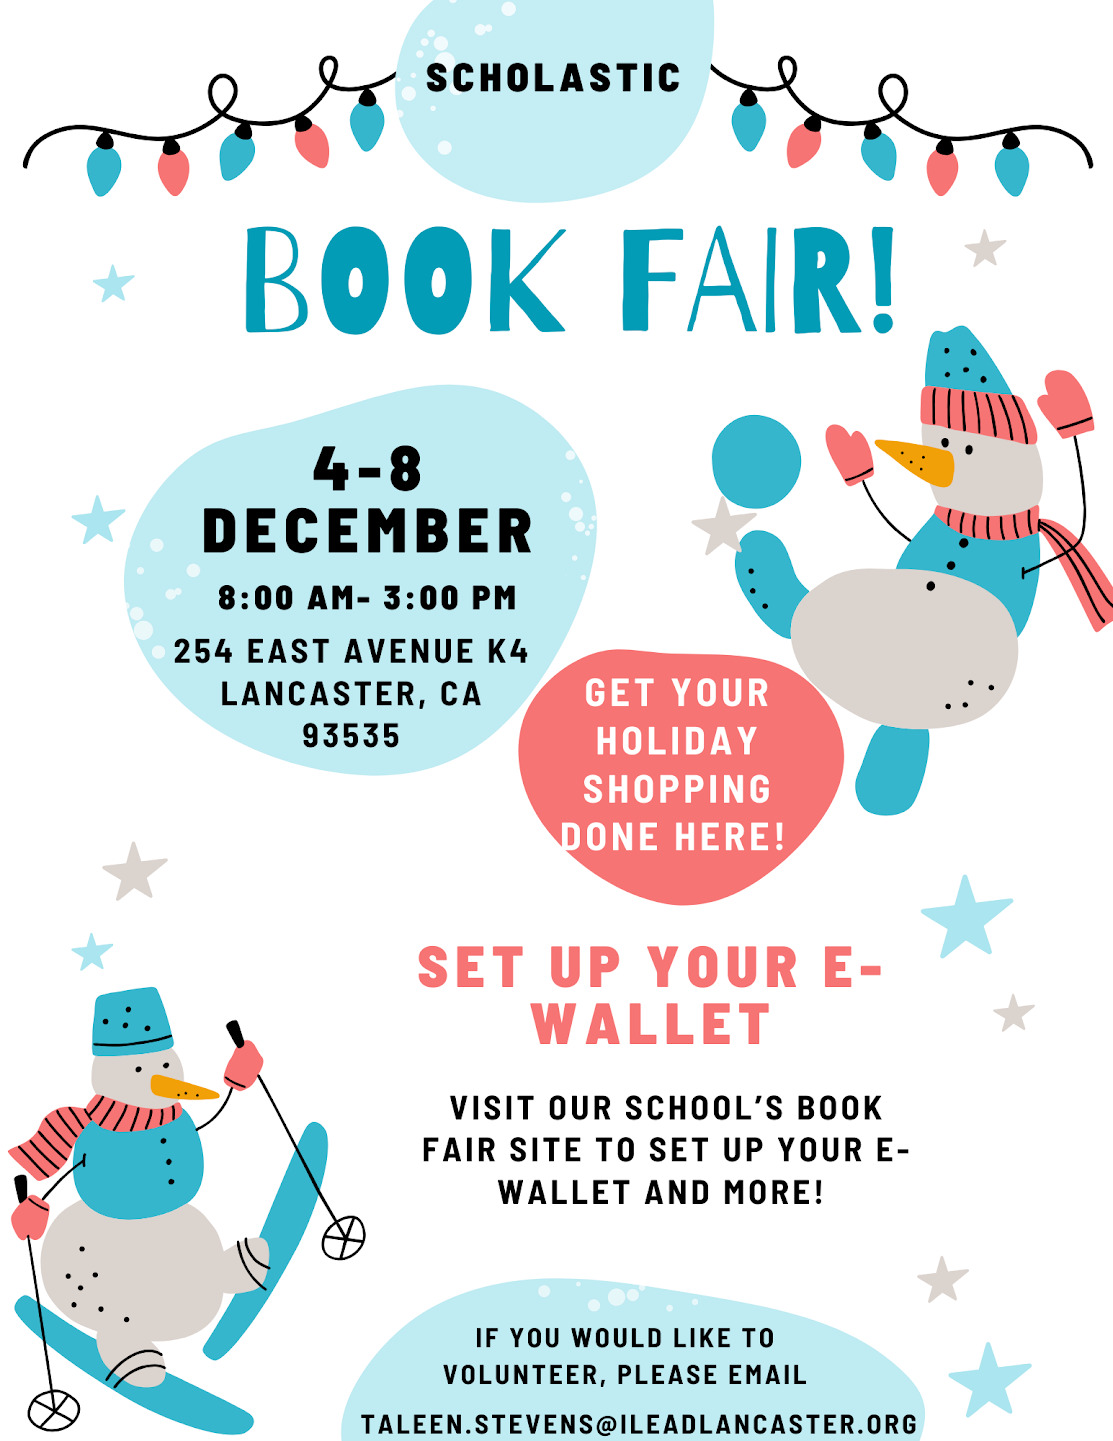 iLEAD Lancaster Scholastic Book Fair